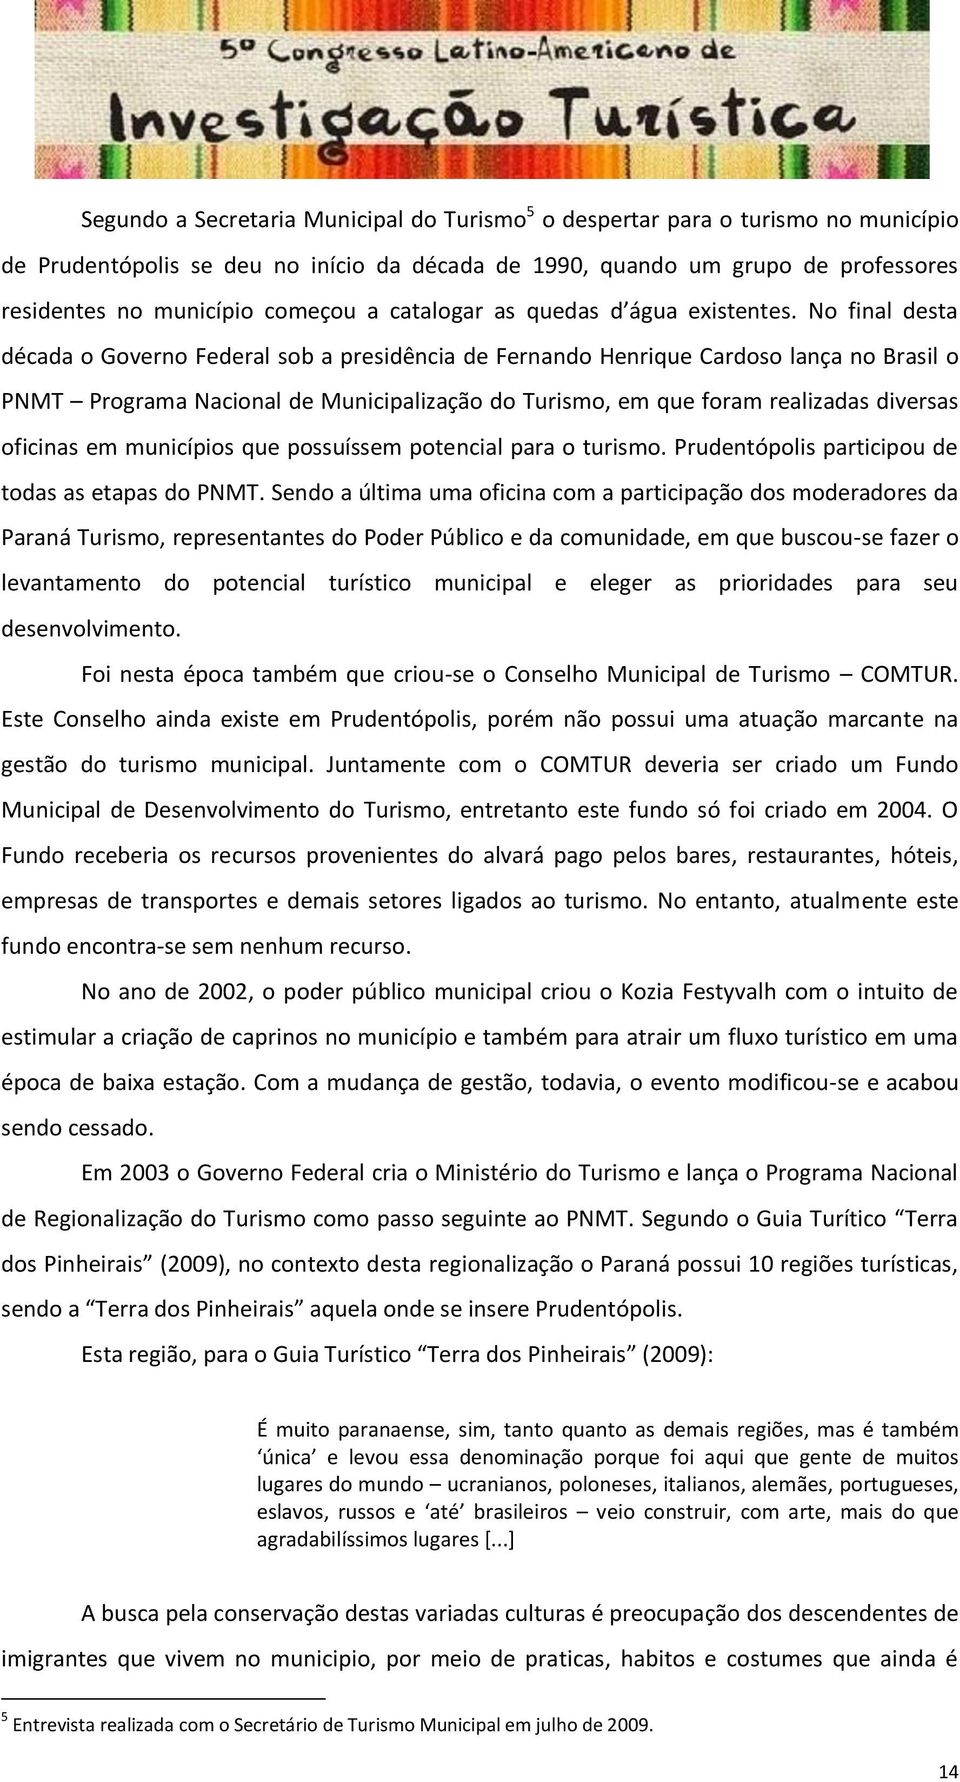 No final desta década o Governo Federal sob a presidência de Fernando Henrique Cardoso lança no Brasil o PNMT Programa Nacional de Municipalização do Turismo, em que foram realizadas diversas